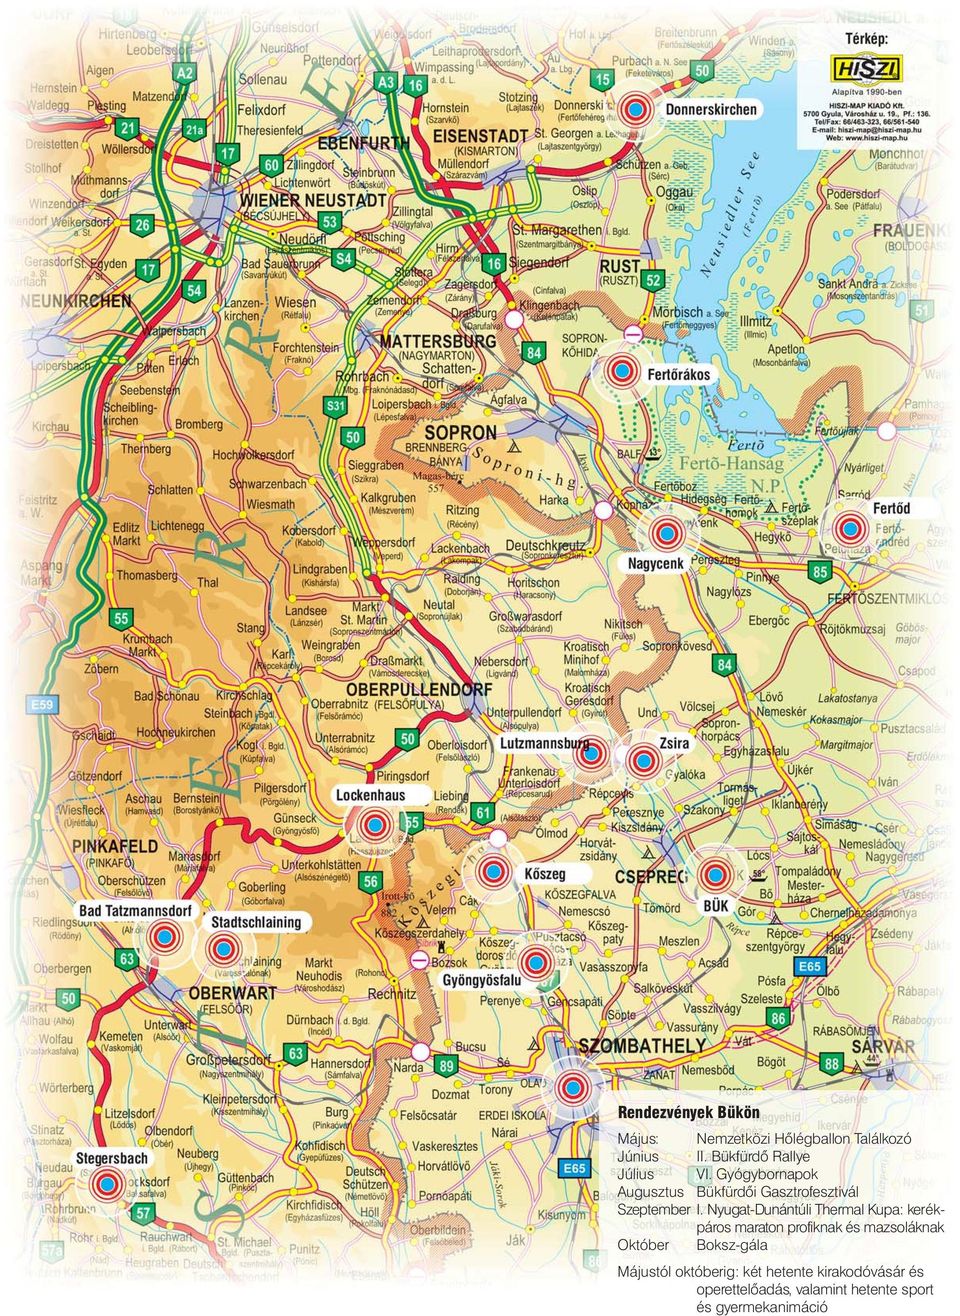 Nyugat-Dunántúli Thermal Kupa: kerékpáros maraton profiknak és mazsoláknak Október